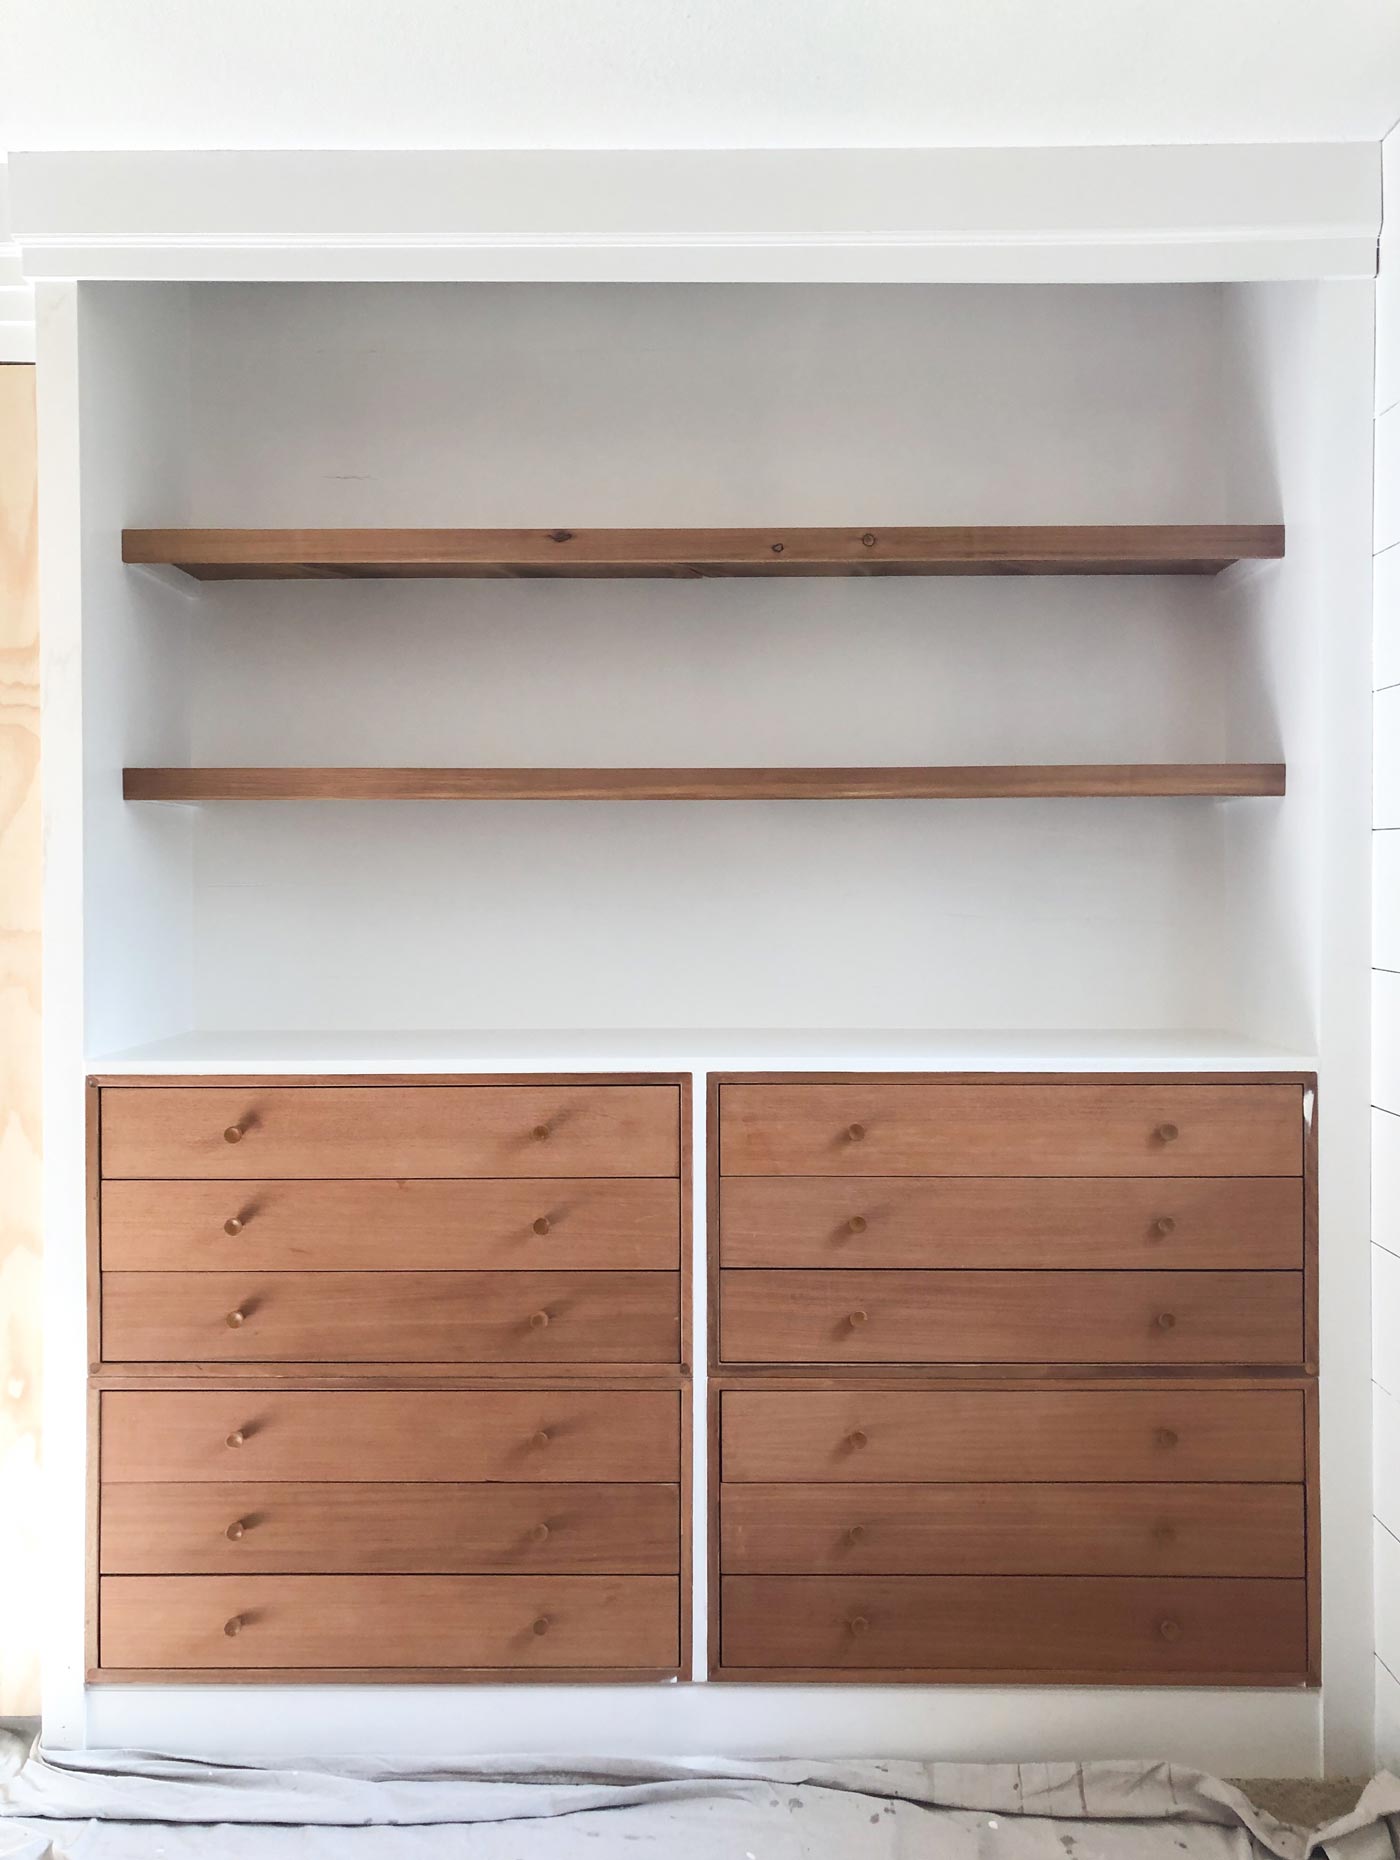 DIY-Built-ins-dressers-shelves-wood-white-paint